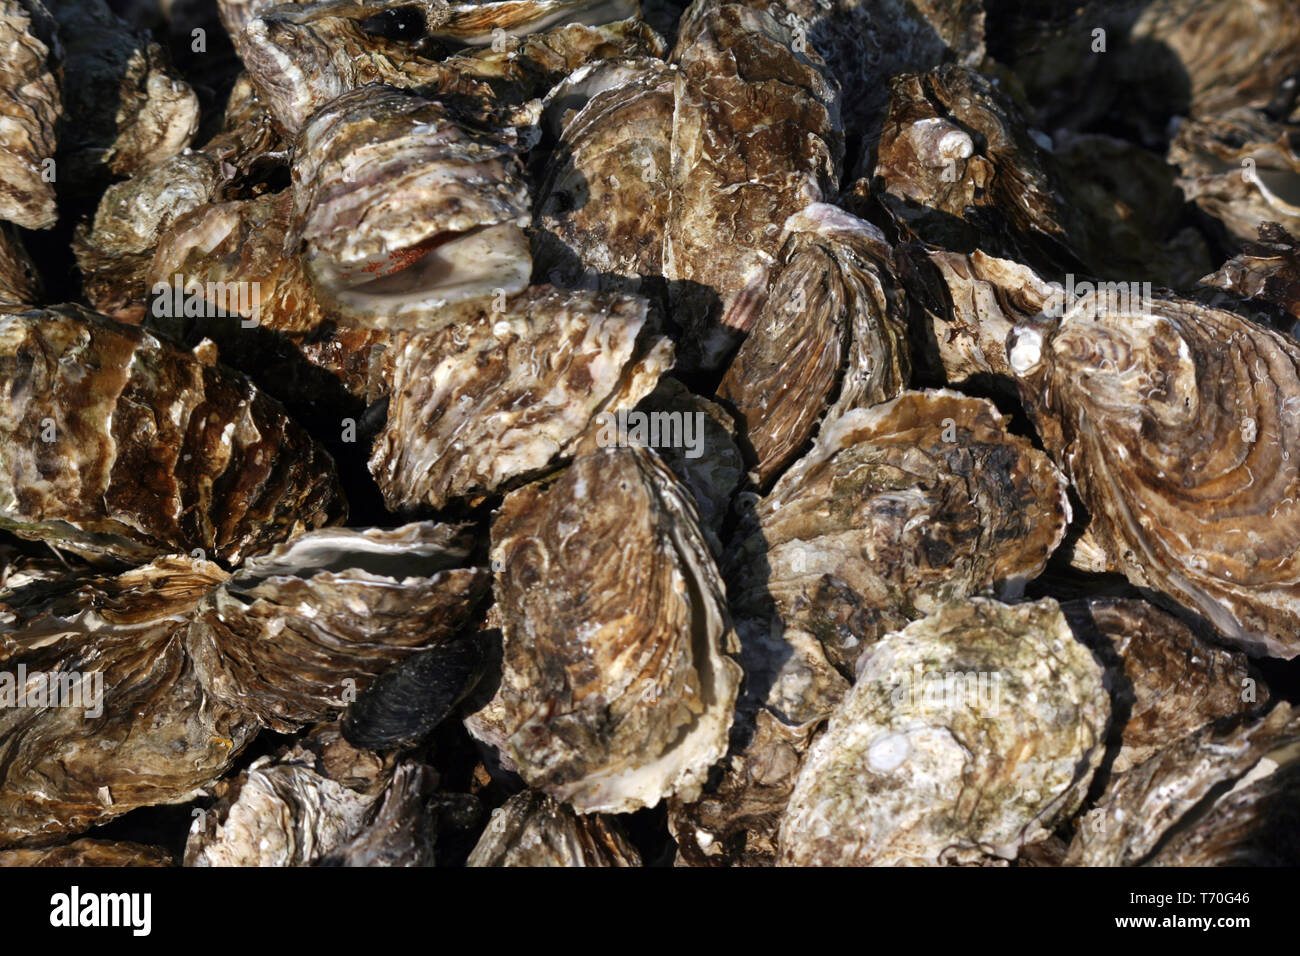 Las ostras de Bouzigues, Etang de Thau, Francia Foto de stock